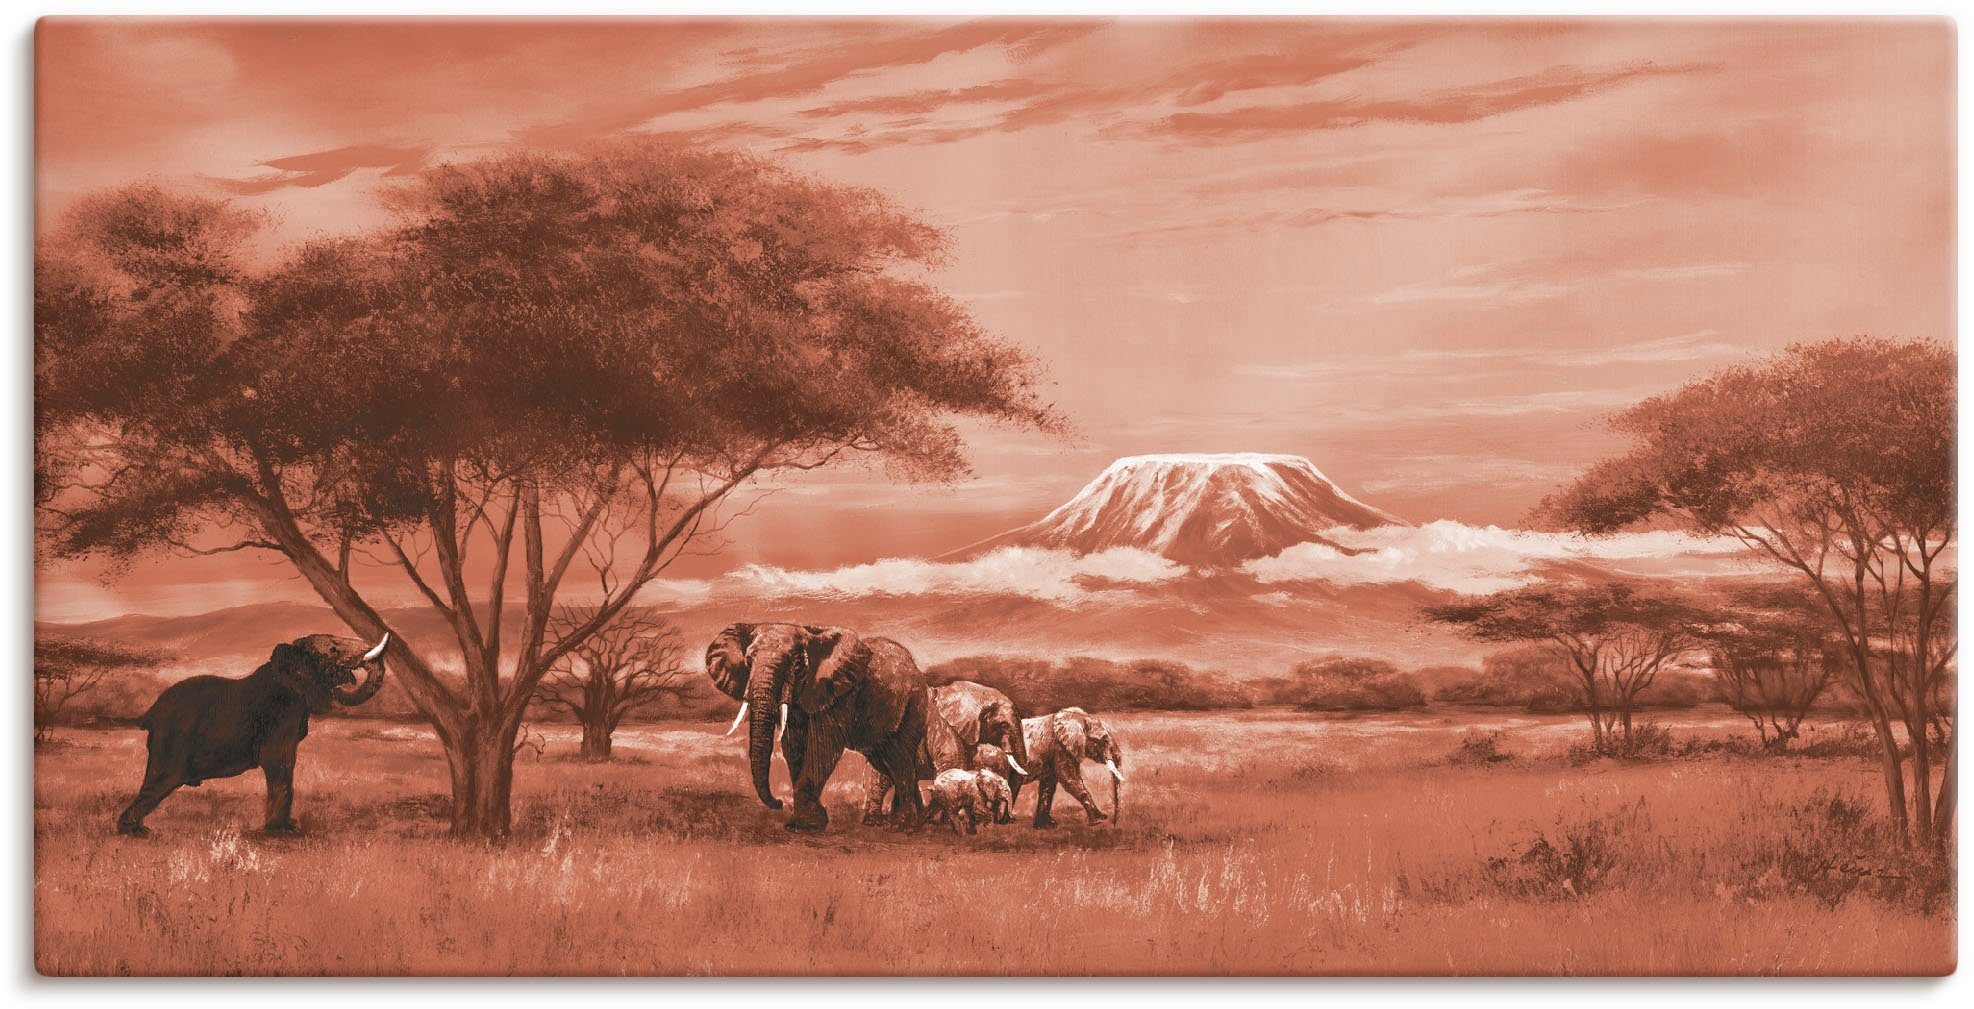 Artland Artprint Olifanten bij Kilimanjaro in vele afmetingen & productsoorten - artprint van aluminium / artprint voor buiten, artprint op linnen, poster, muursticker / wandfolie